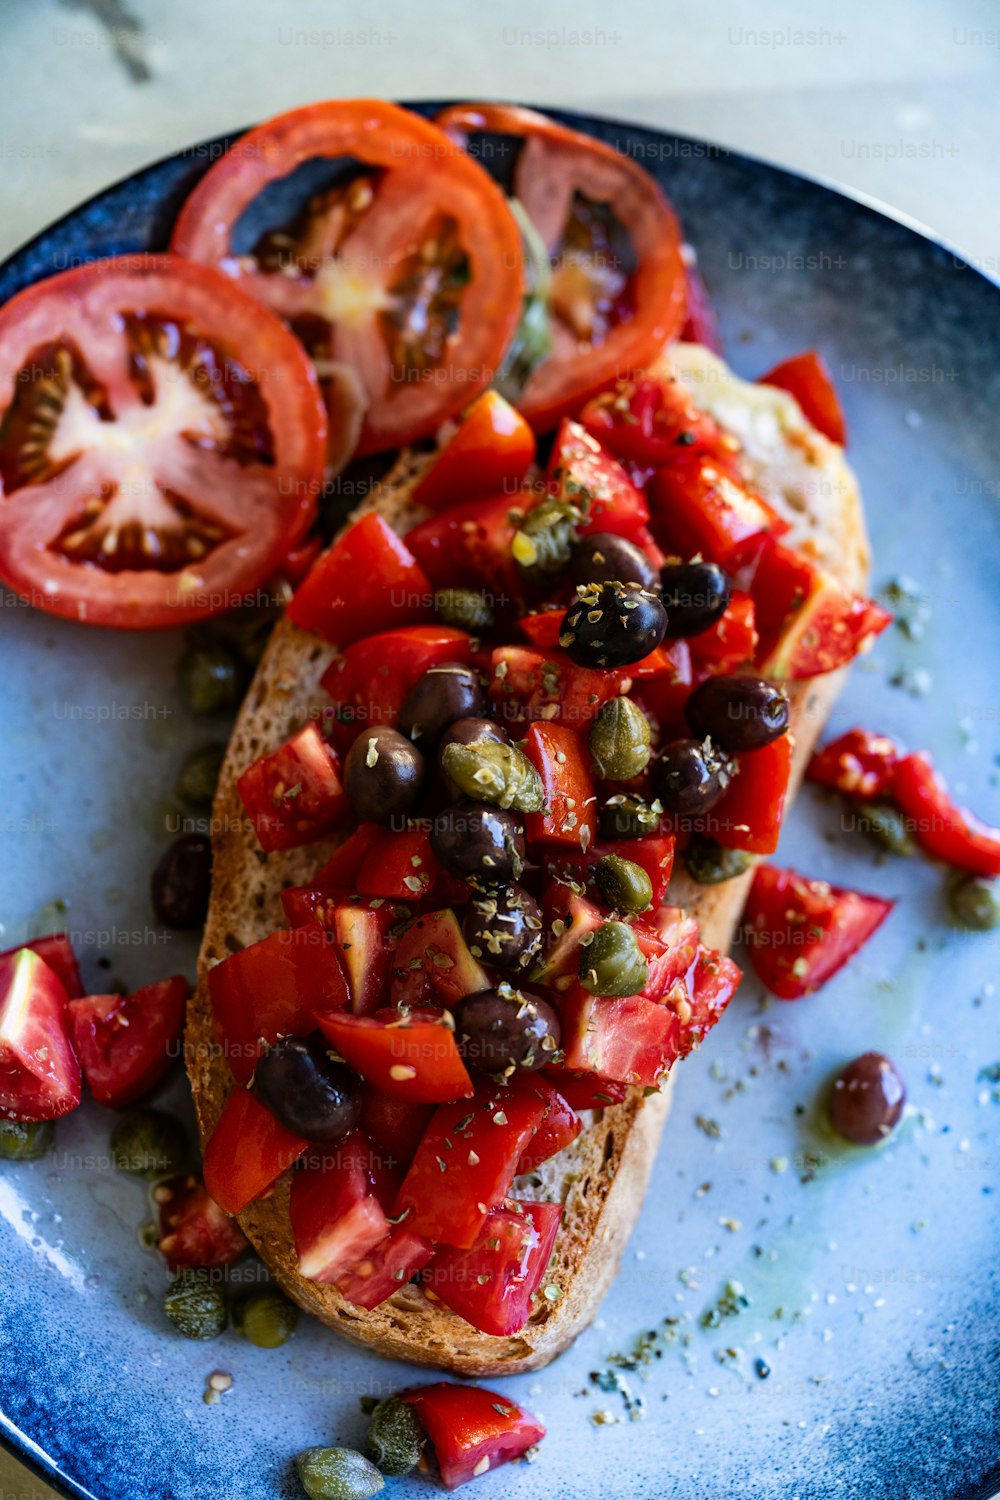 토마토와 올리브로 덮인 빵 한 조각을 얹은 파란색 접시